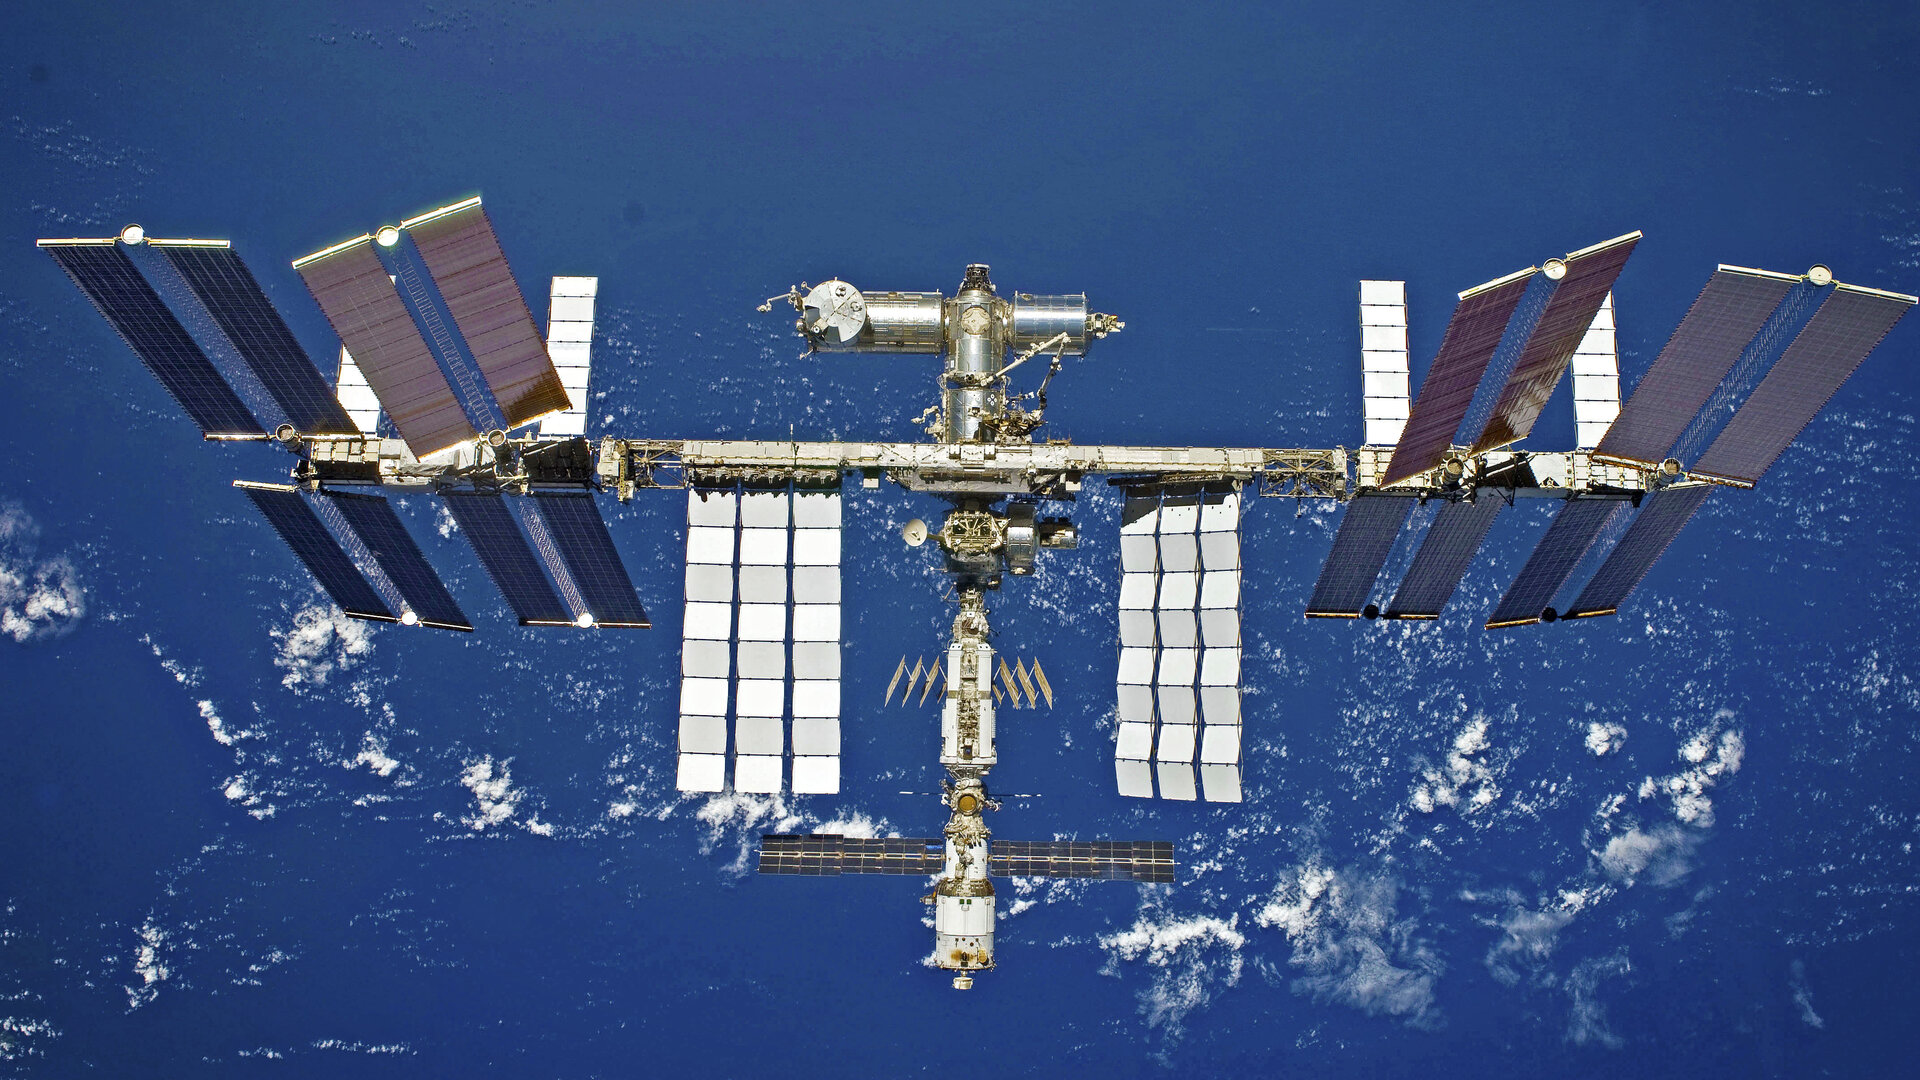 अंतरिक्ष में शुरू हुई फूड डिलीवरी, जानें कैसे 8.5 घंटे में ISS पर पहुंचाया खाना